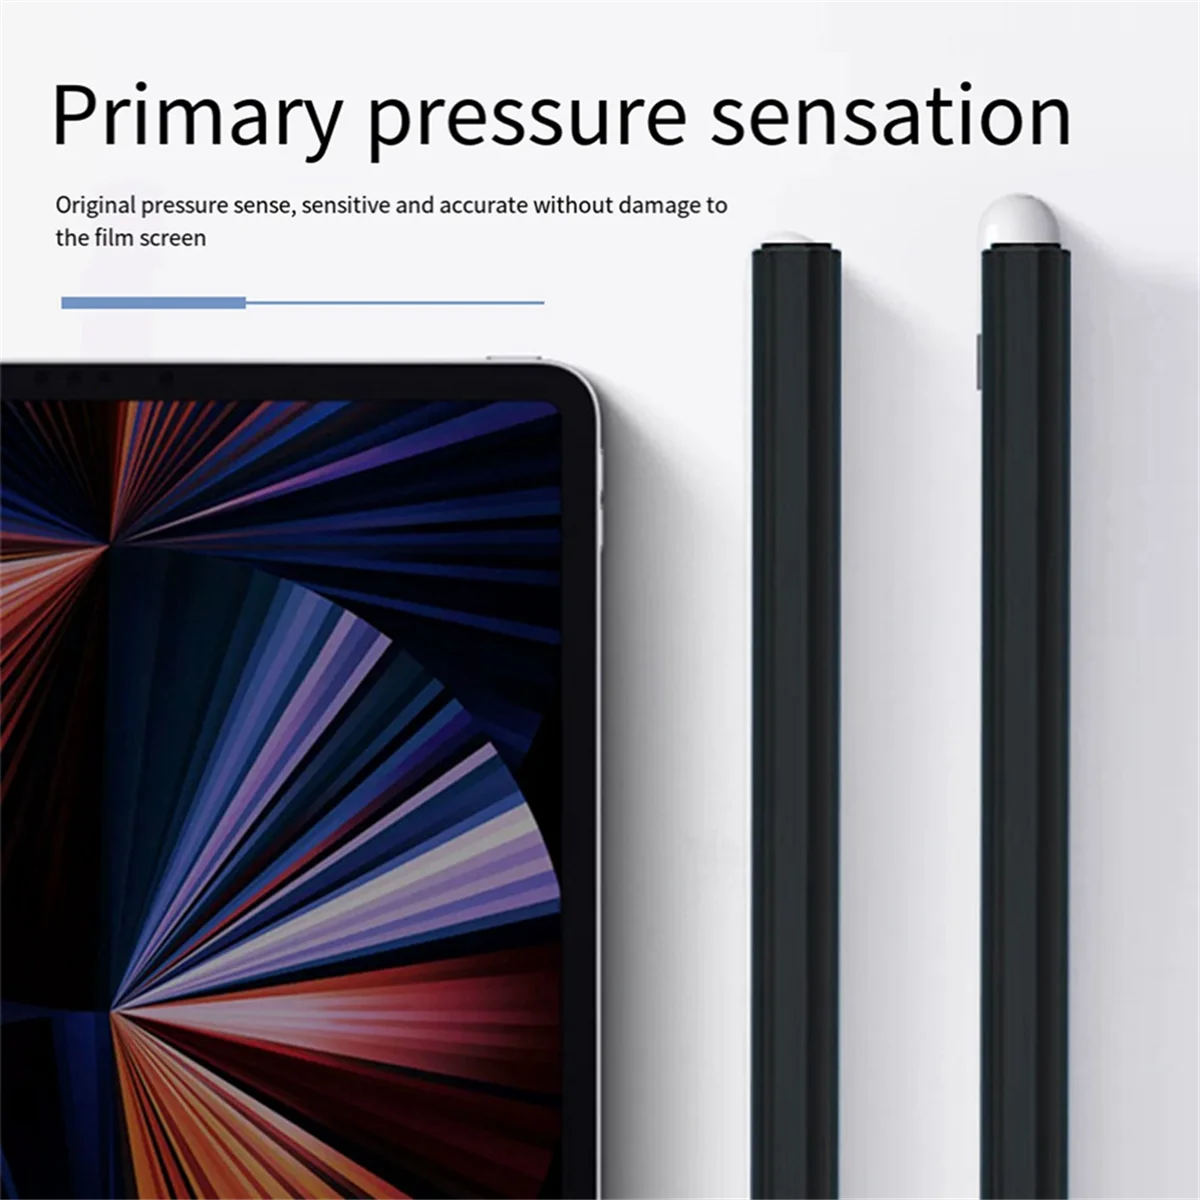 Eest Xiaomi Inspiratsiooni Stylus Pliiatsi Otsa Varda Toru 2. Metallist Pulka Xiaomi Tablett Asendamine Pliiatsi Otsa Kate,D - 5